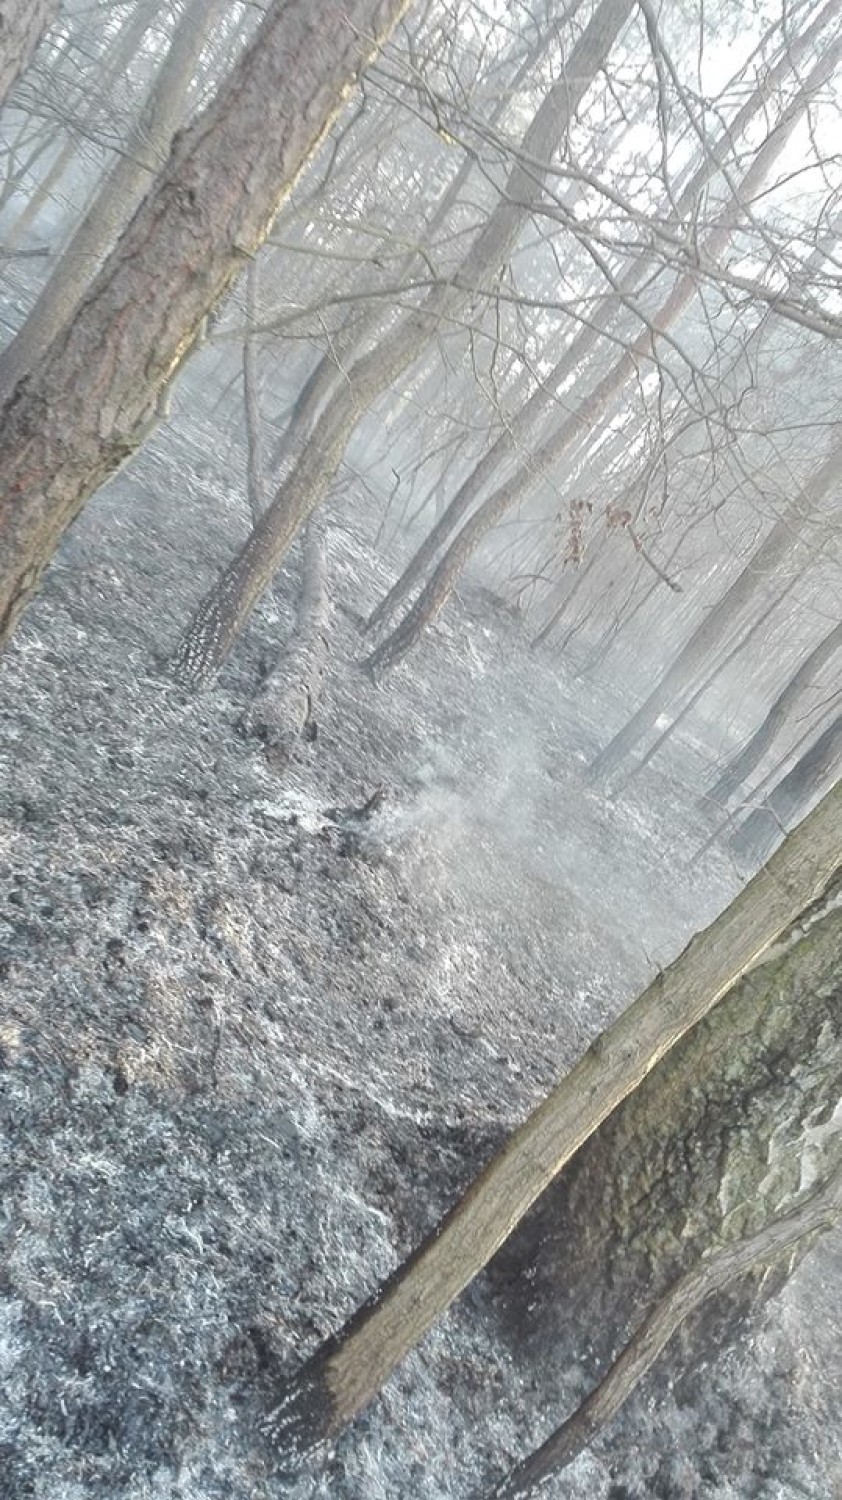 Powiat radomszczański: Strażacy gasili 8 pożarów. Płonął las i suche trawy [ZDJĘCIA]